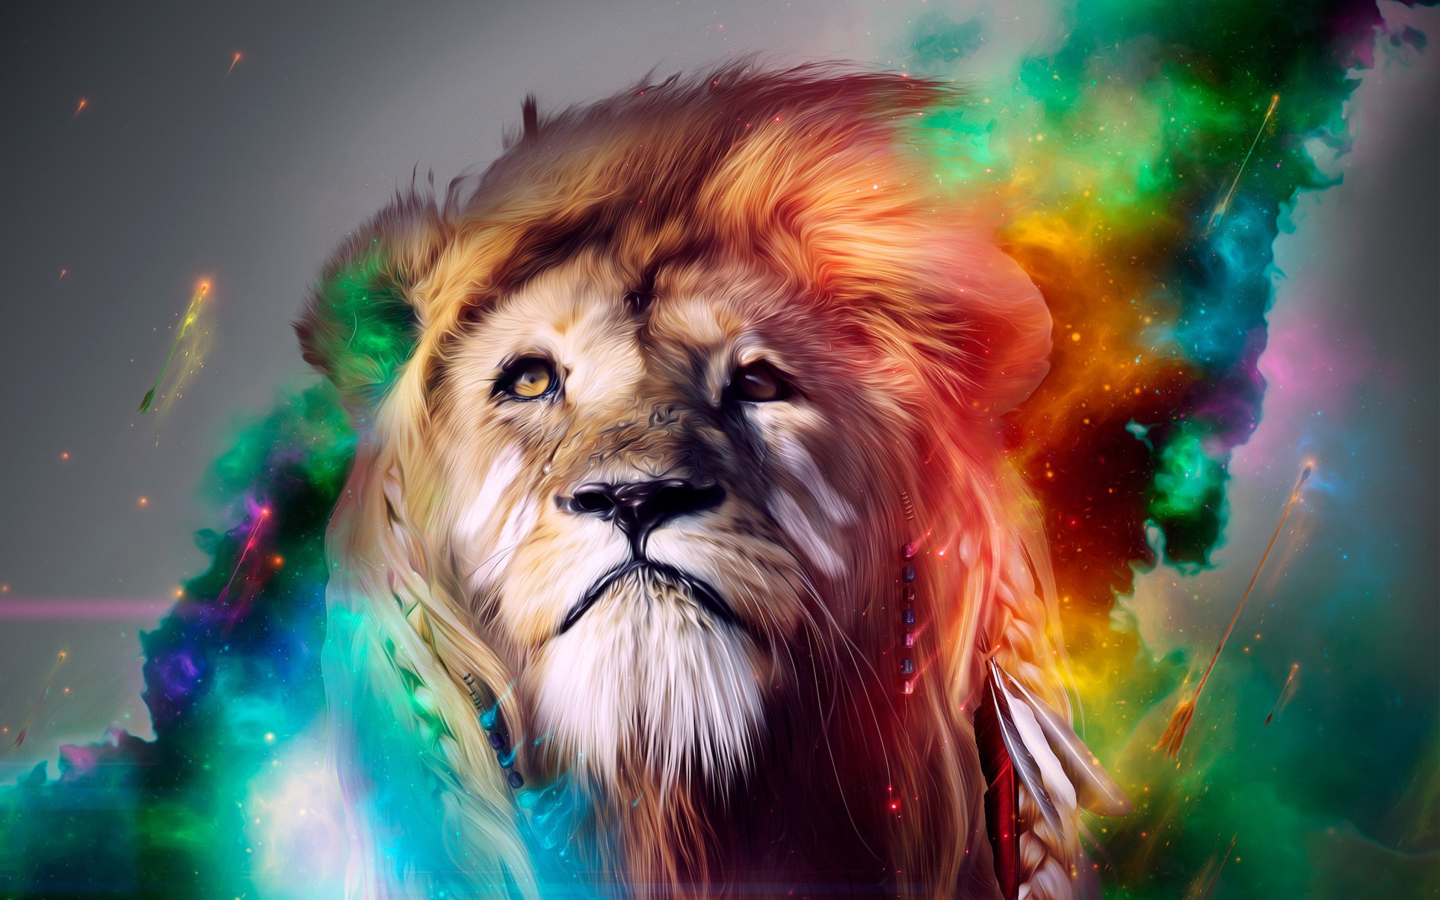 Lion Art screenshot #1 1440x900